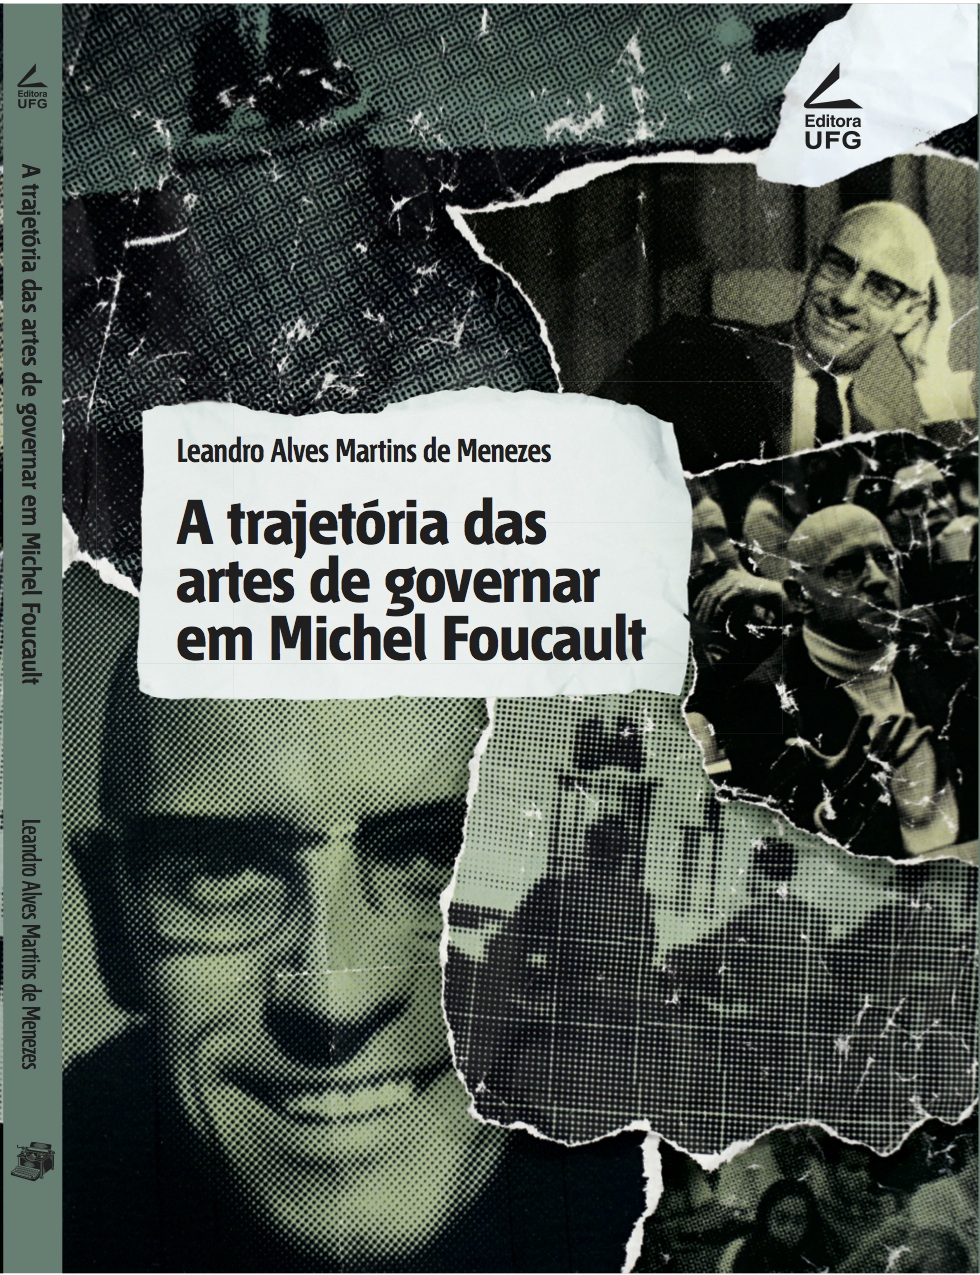 A trajetória das artes de governar em Michel Foucault